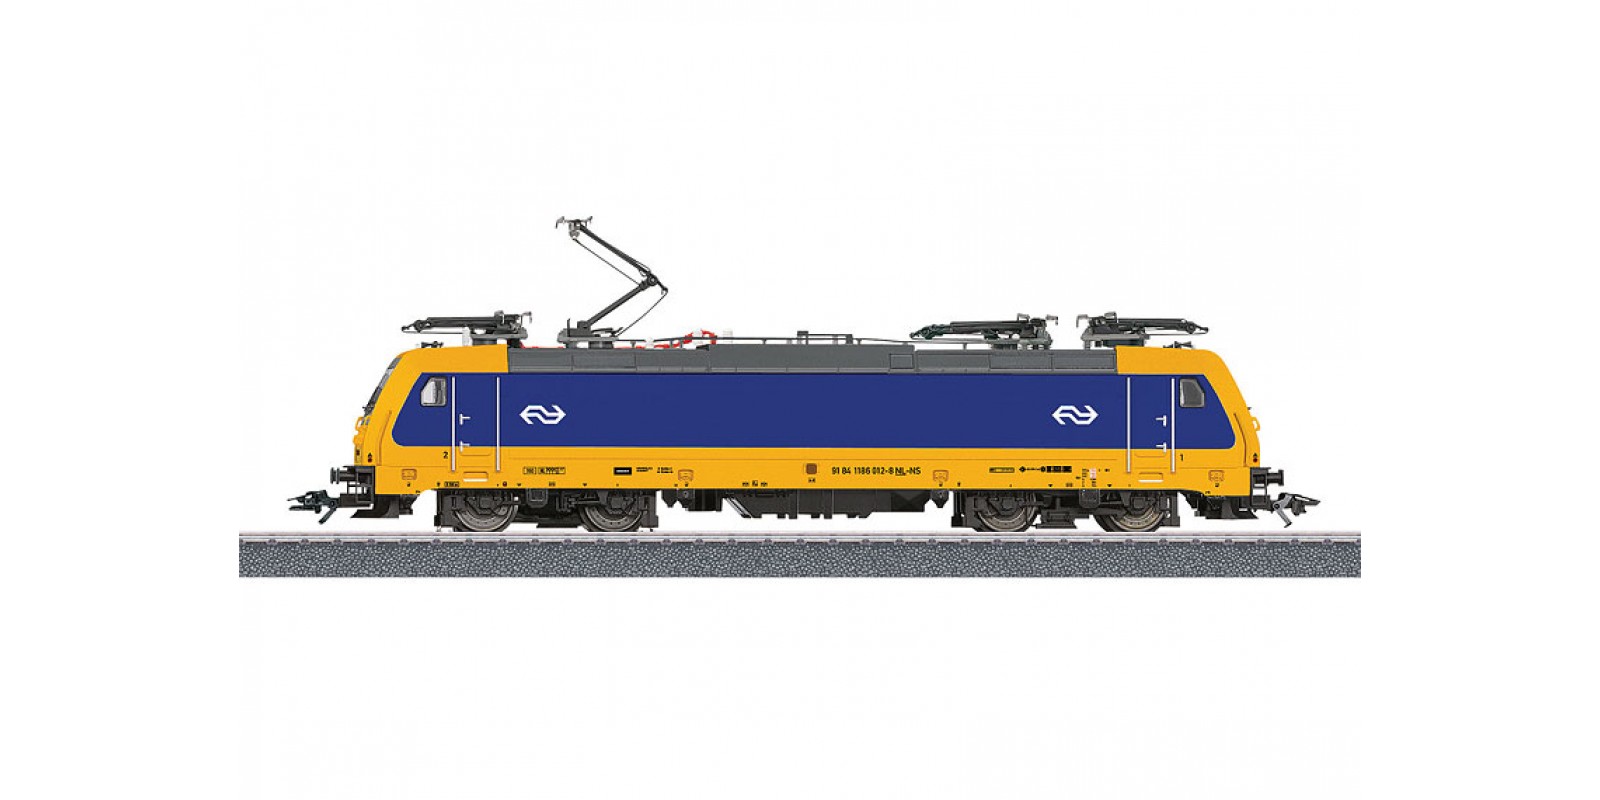 36629 Class E 186 Electric Locomotive